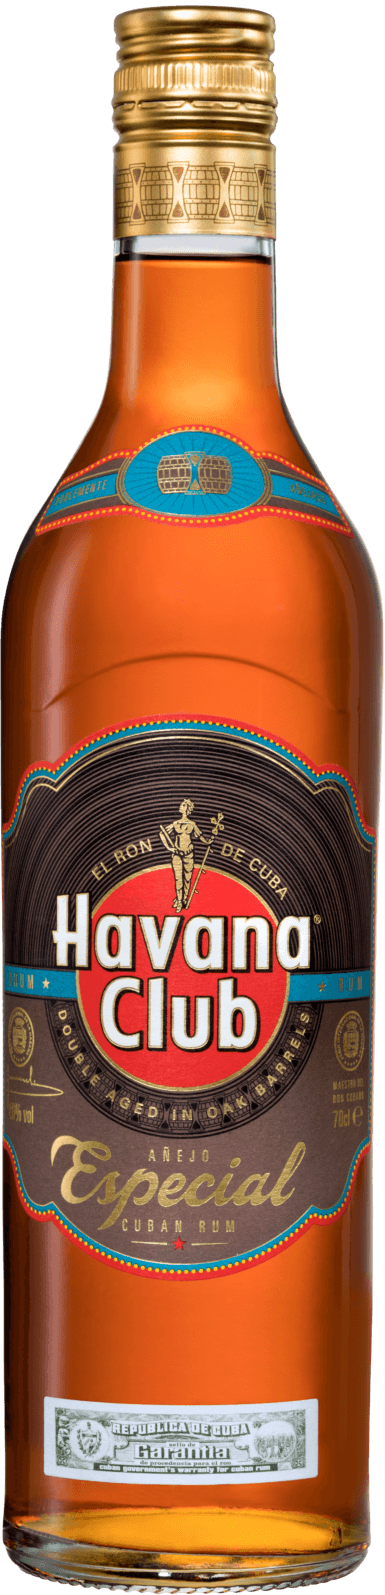 rum Especial | Havana Golden Havana Club Club